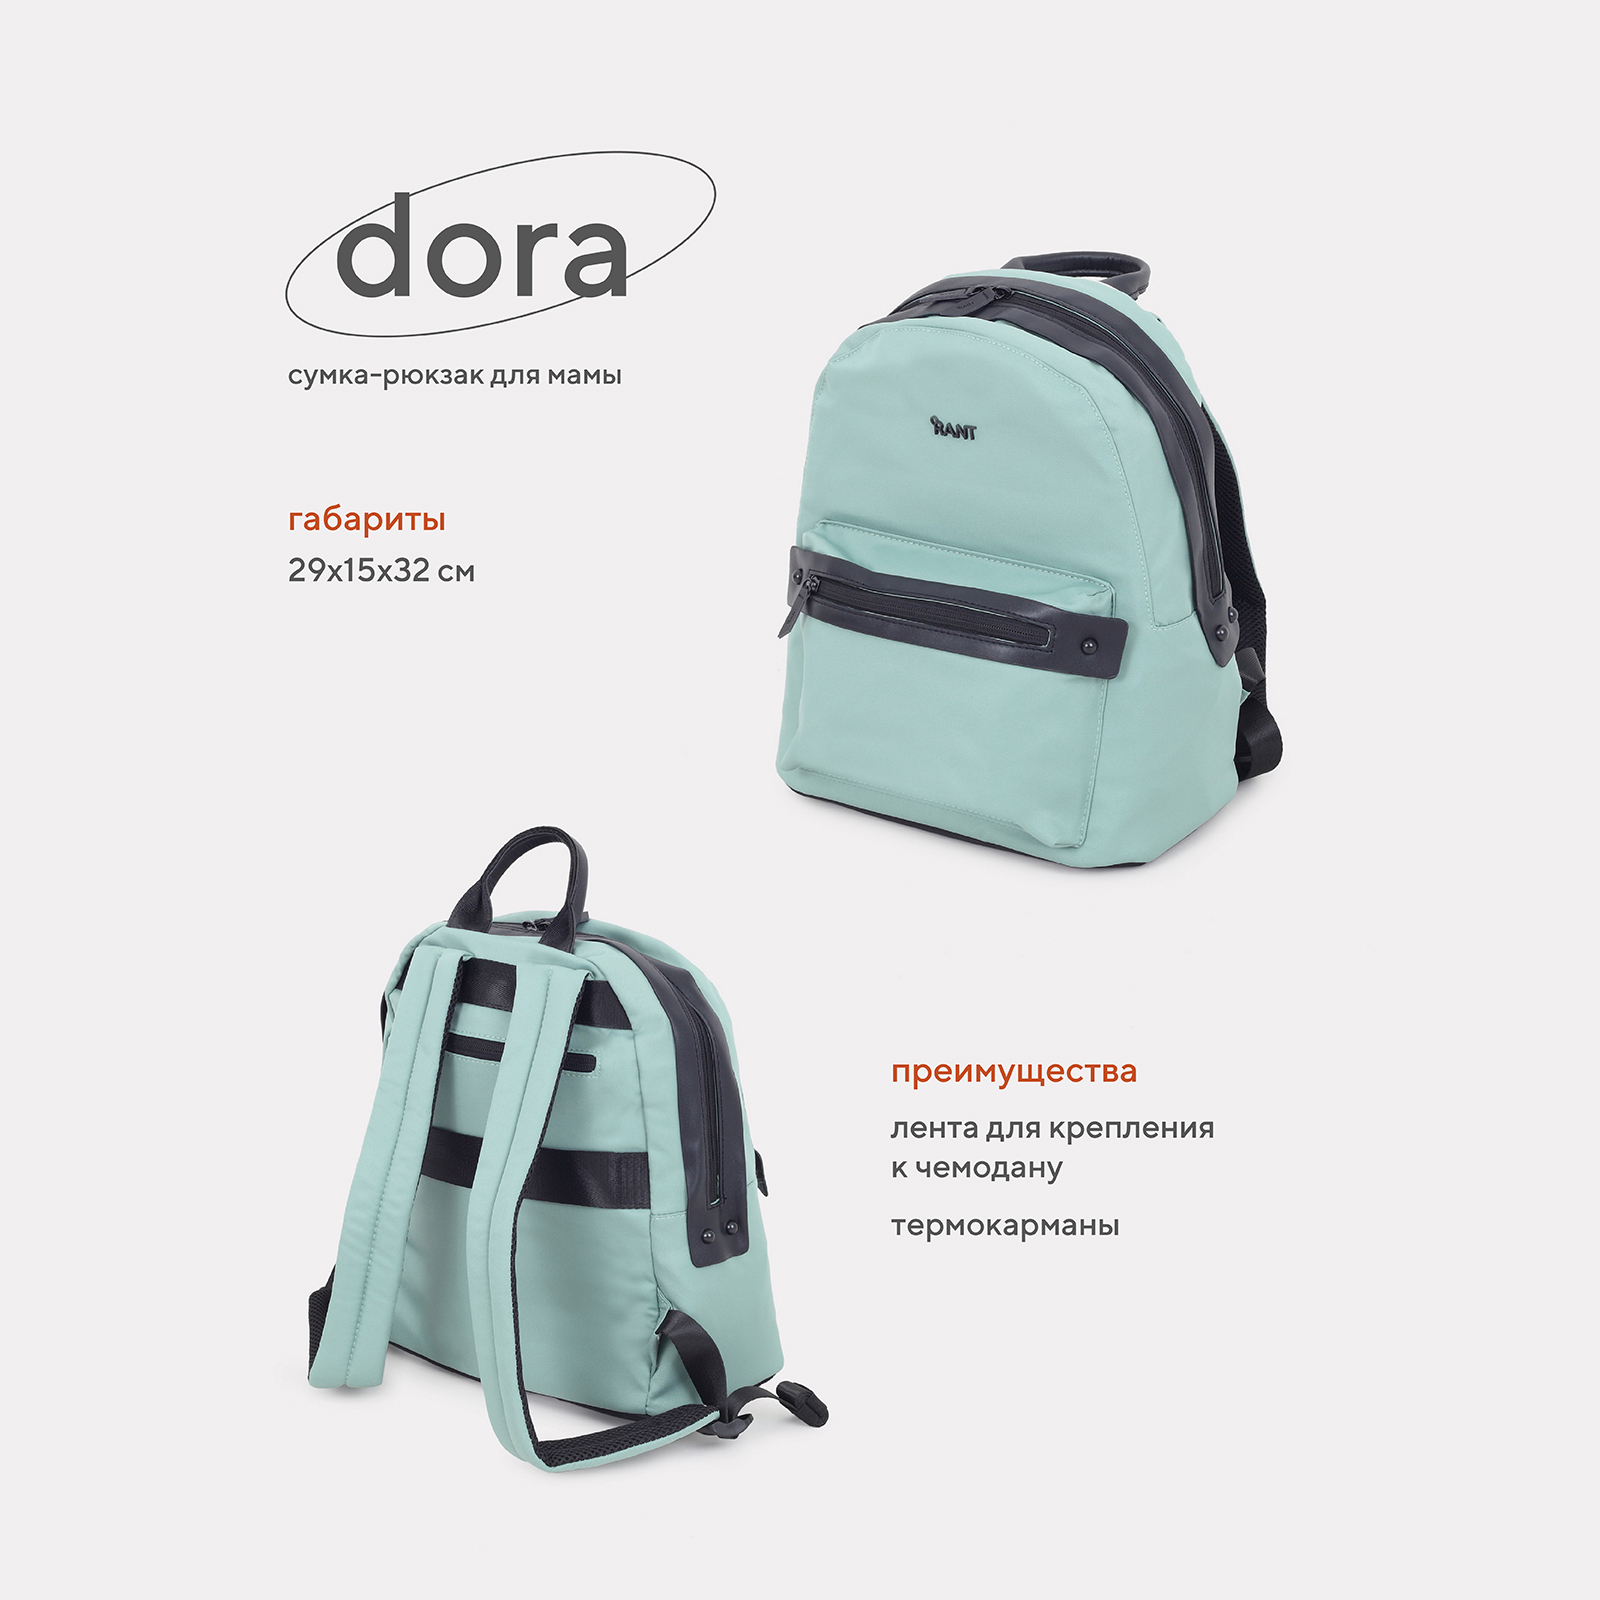 Сумка-рюкзак для мамы RANT Dora RB009 Green сумка для мамы bugaboo changing bag forest green 2306010083